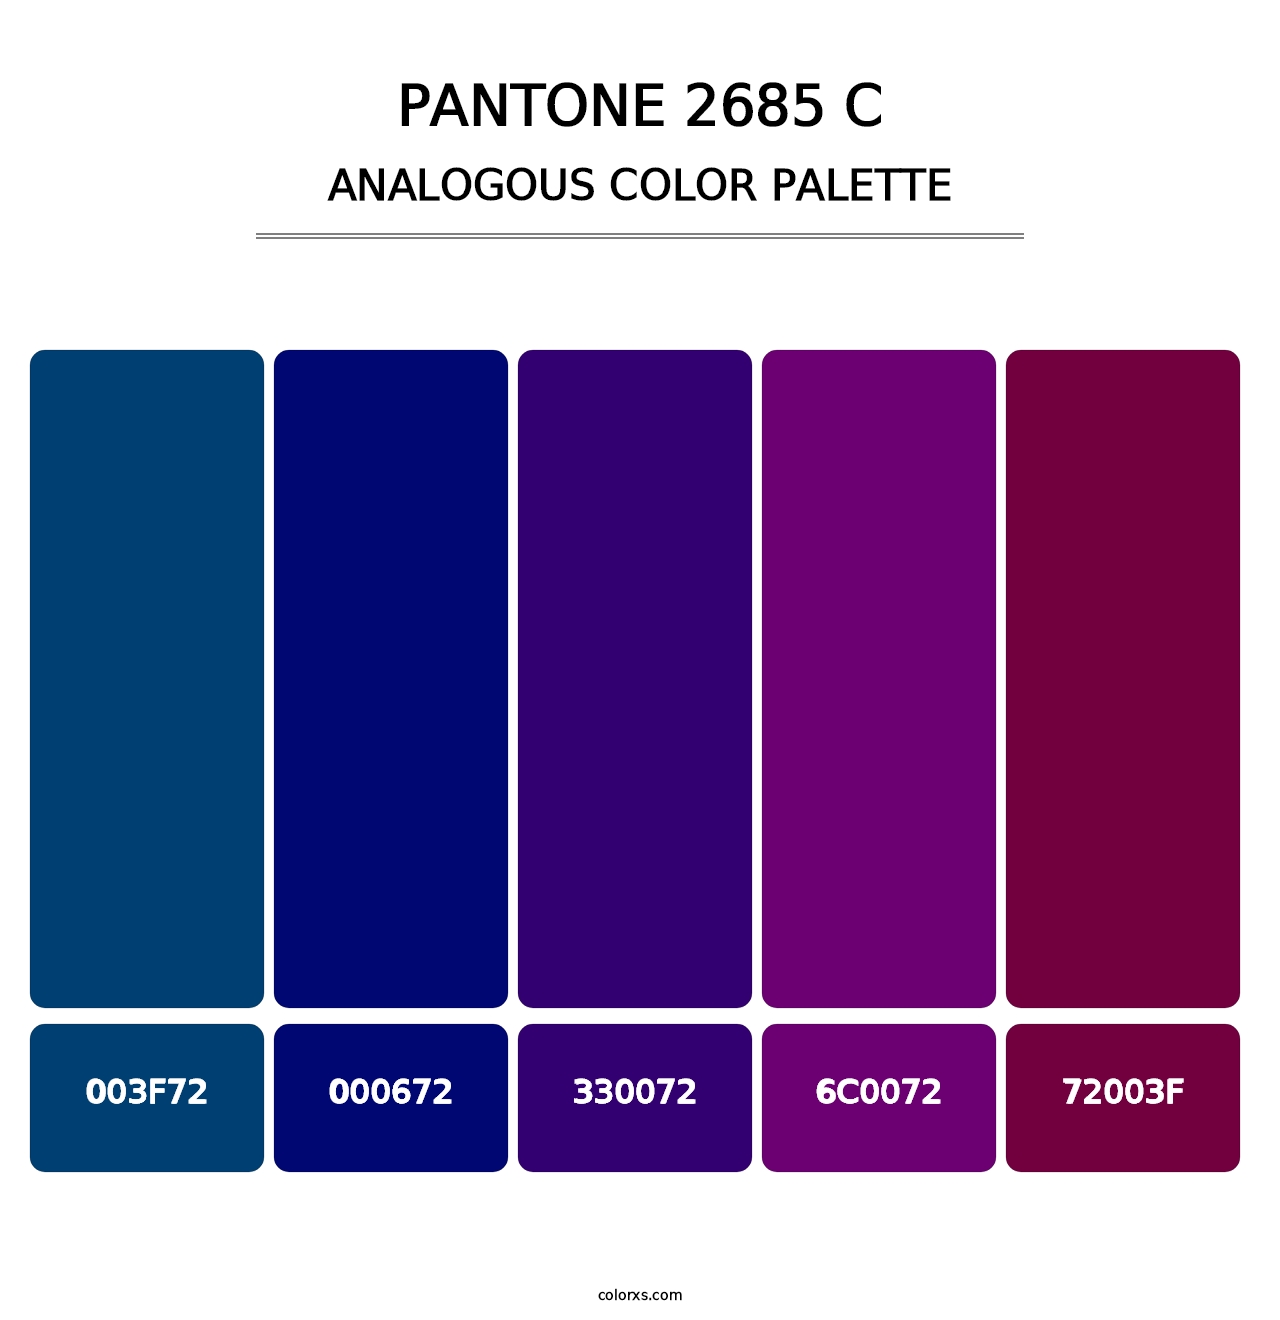 PANTONE 2685 C - Analogous Color Palette